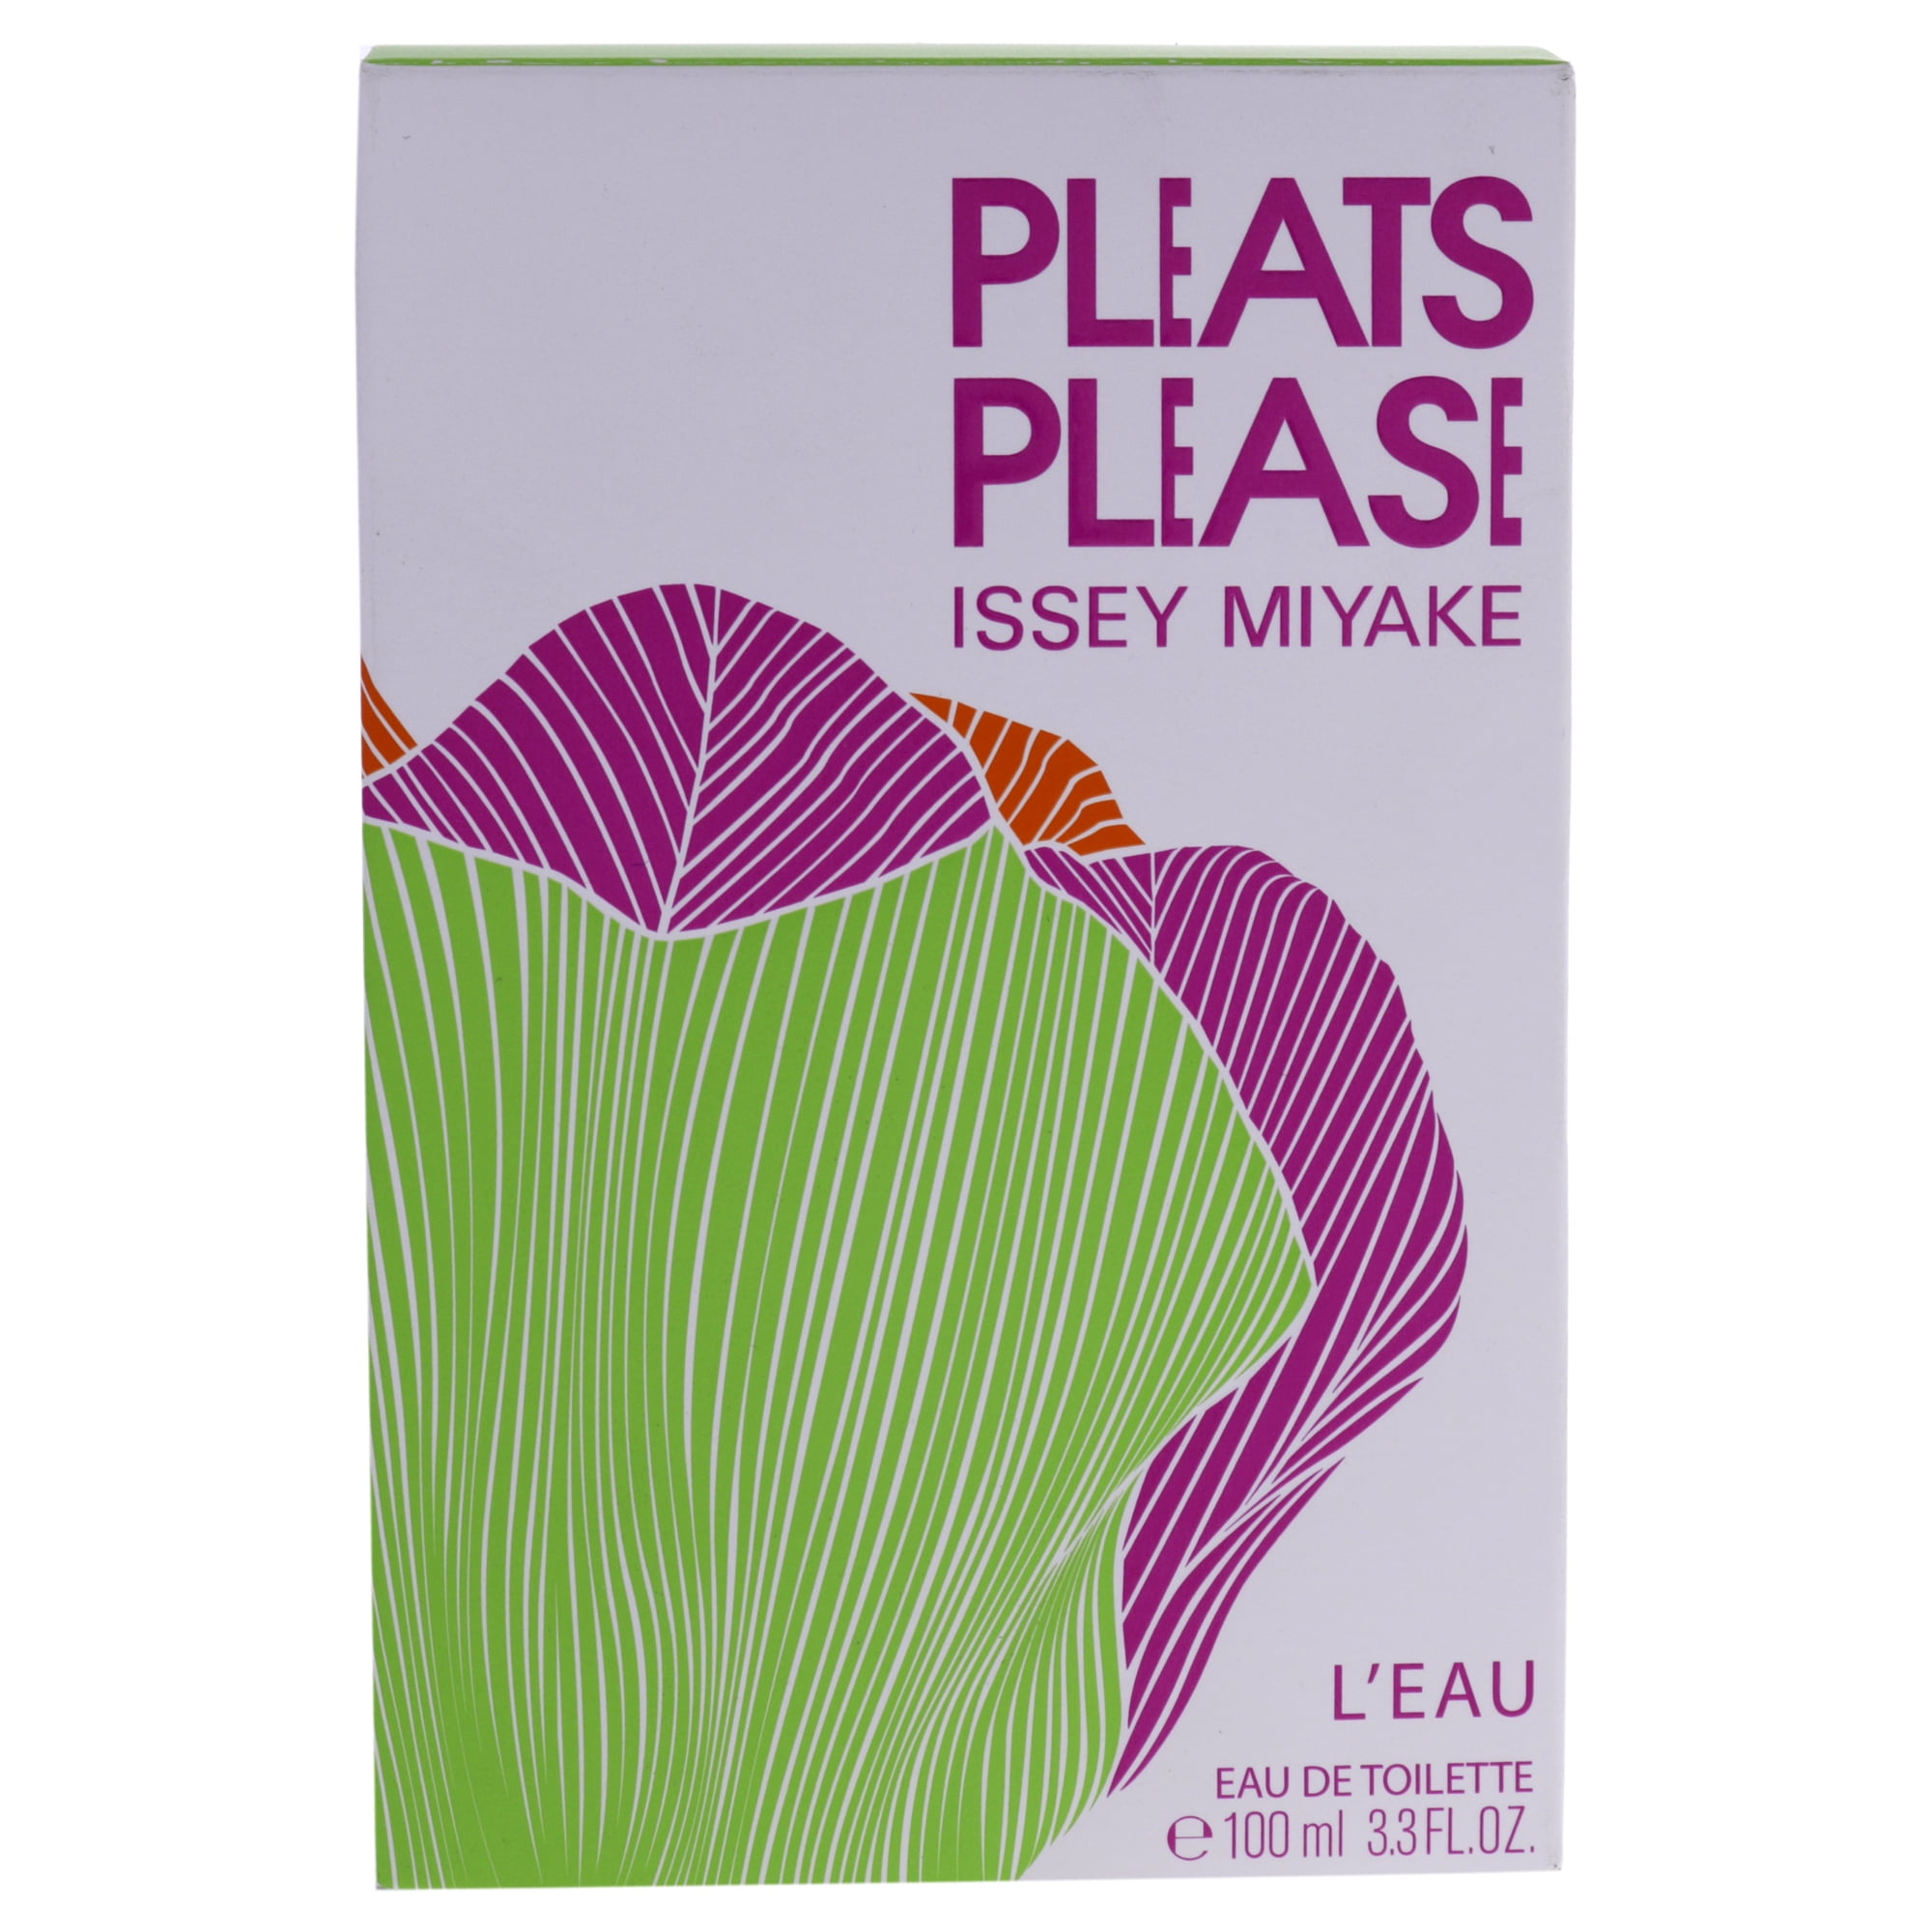  Issey Miyake Pleats Please Leau Women 3.3 oz EDT Spray, single  (NLP133296) : Beauty & Personal Care